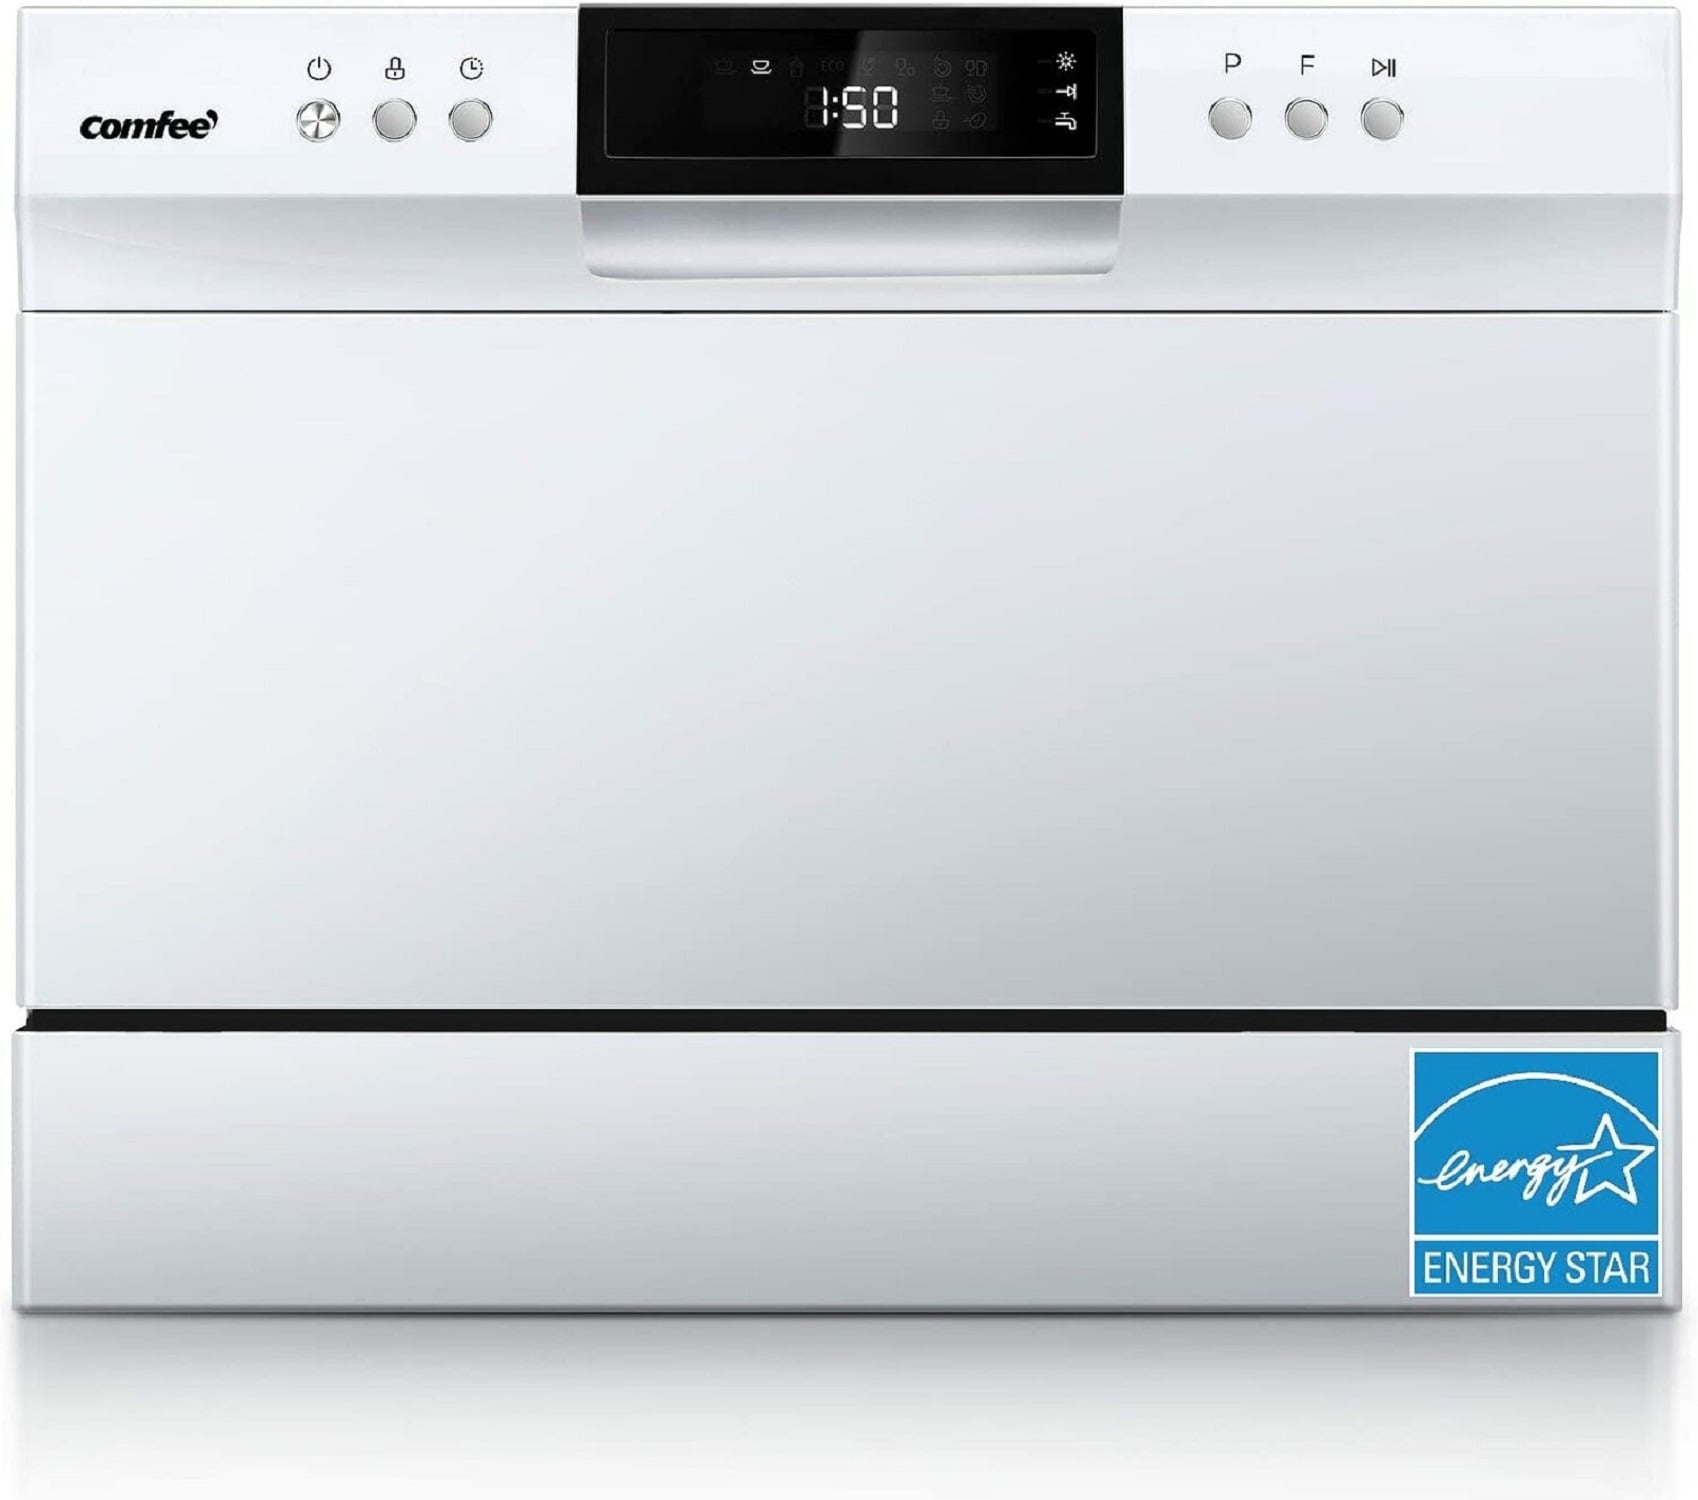 Comfee vs Black+Decker countertop Dishwasher Comparison Review